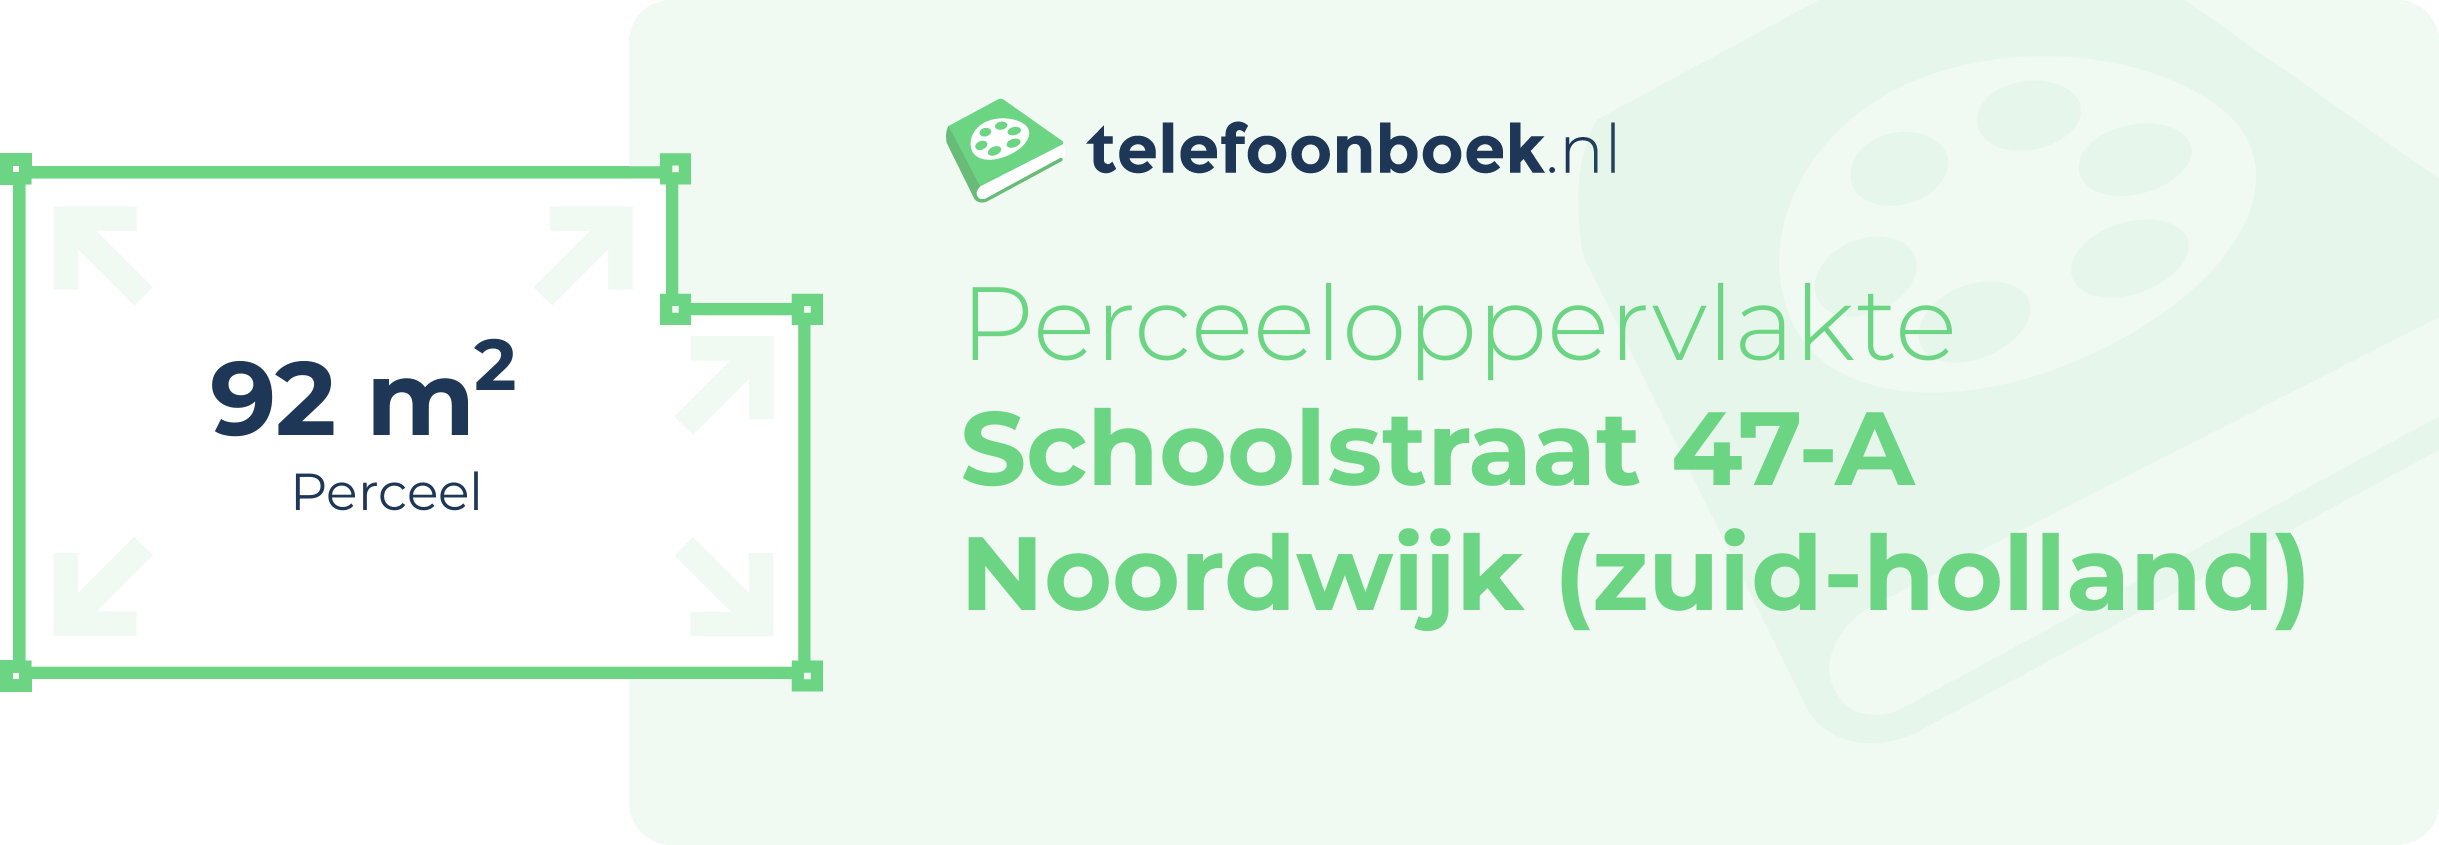 Perceeloppervlakte Schoolstraat 47-A Noordwijk (Zuid-Holland)